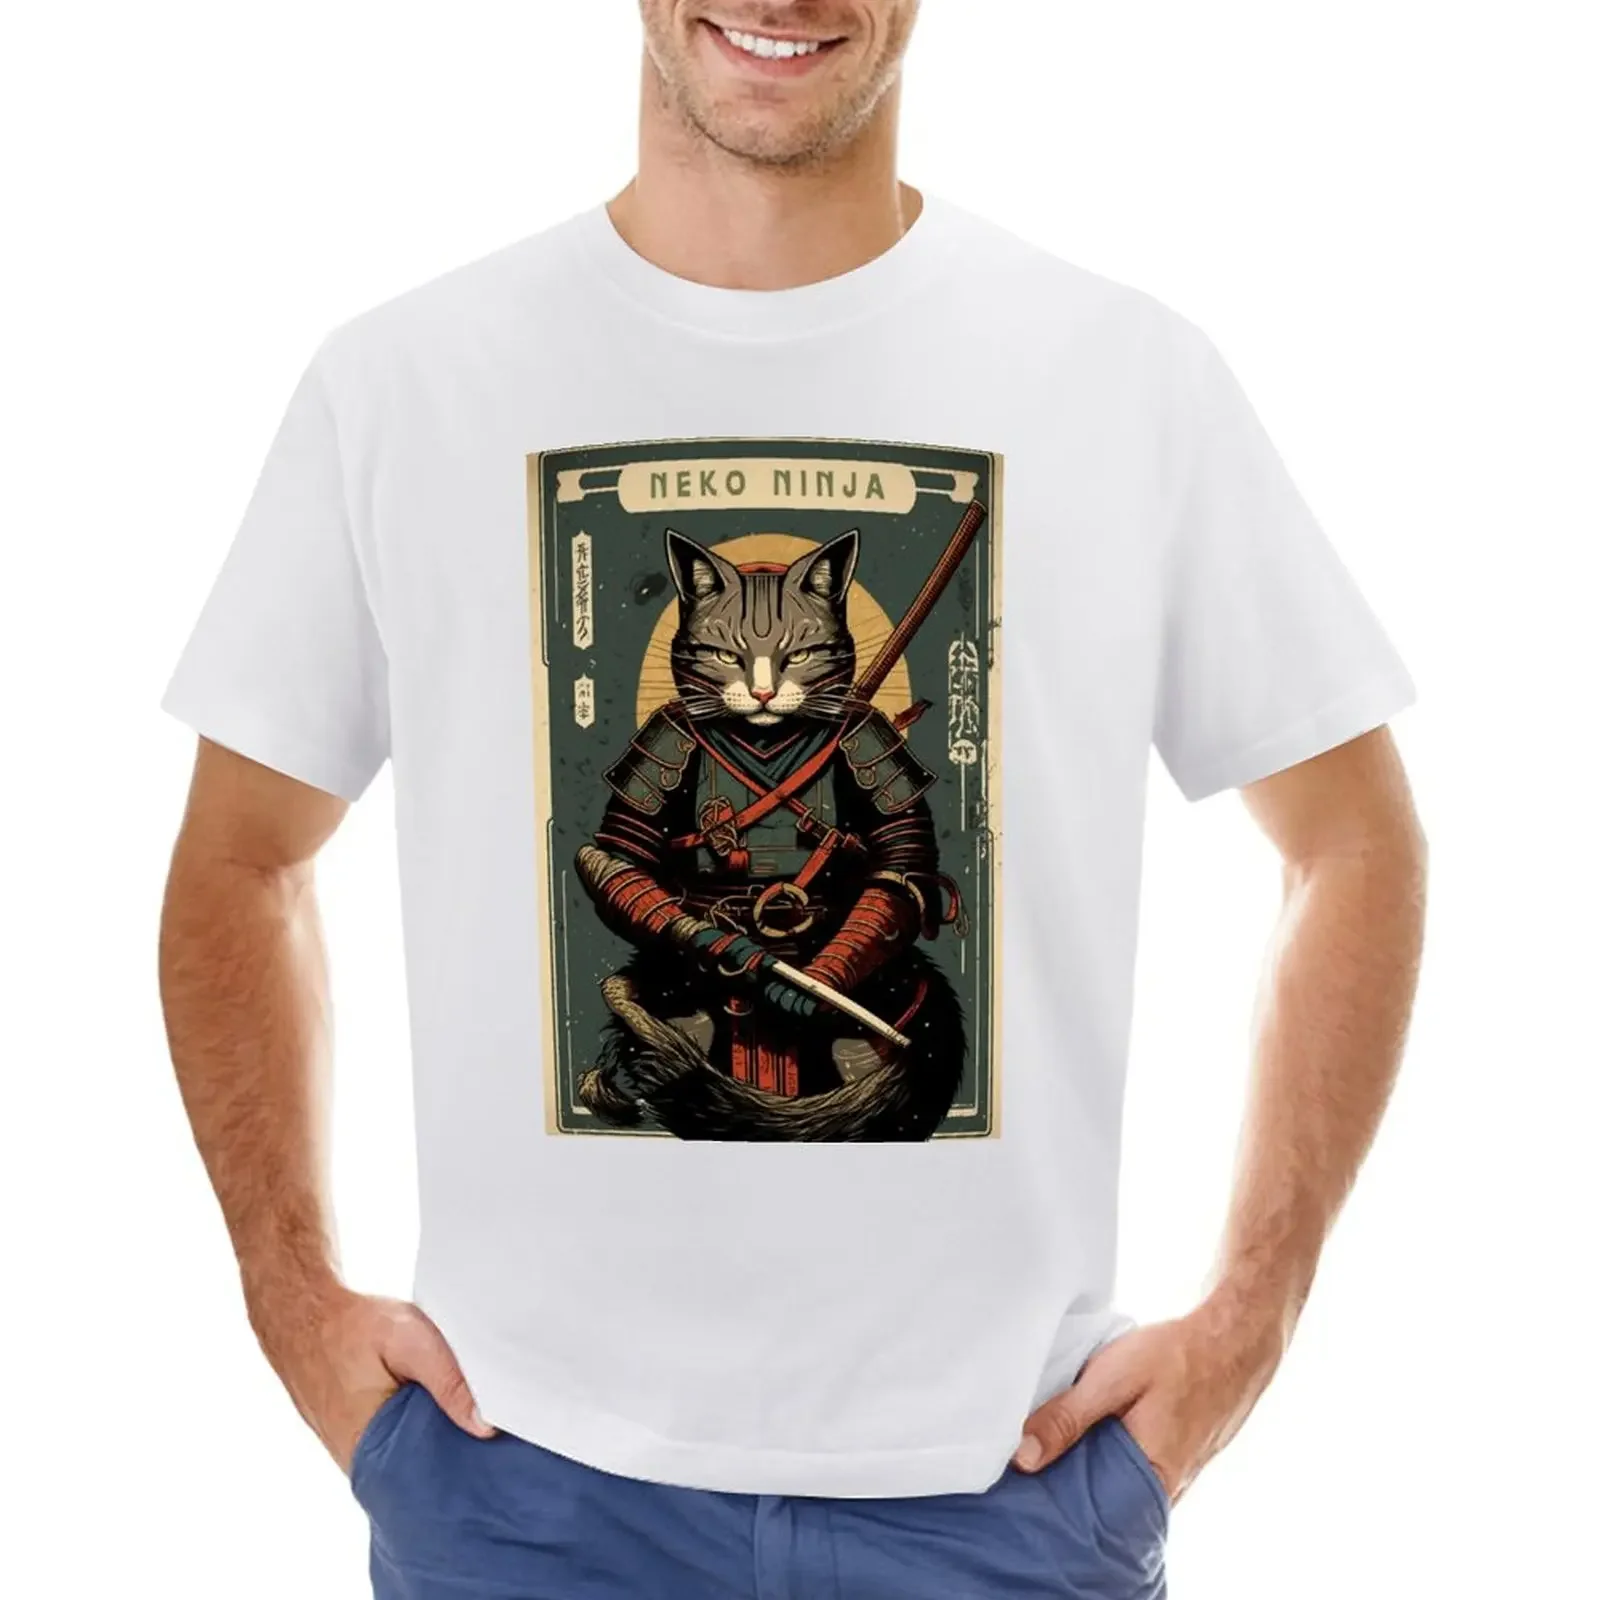 

Samurai cat holding a katana vintage poster - neko ninja T-shirt plus size tops customizeds Men's t-shirt